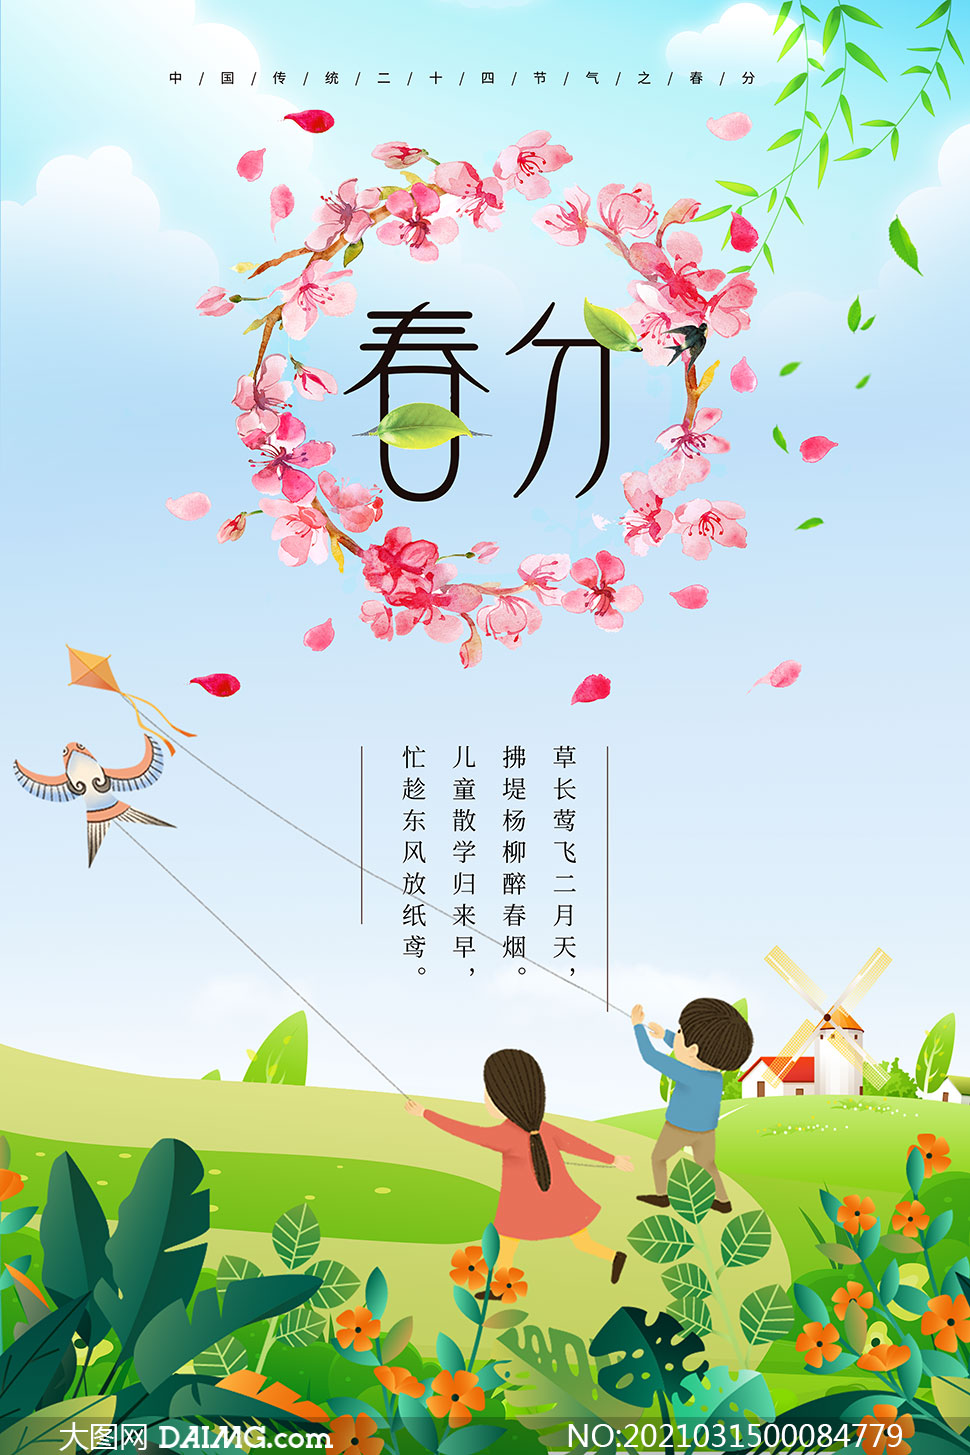 大图首页 psd素材 广告海报 素材信息 中国传统春分节气海报